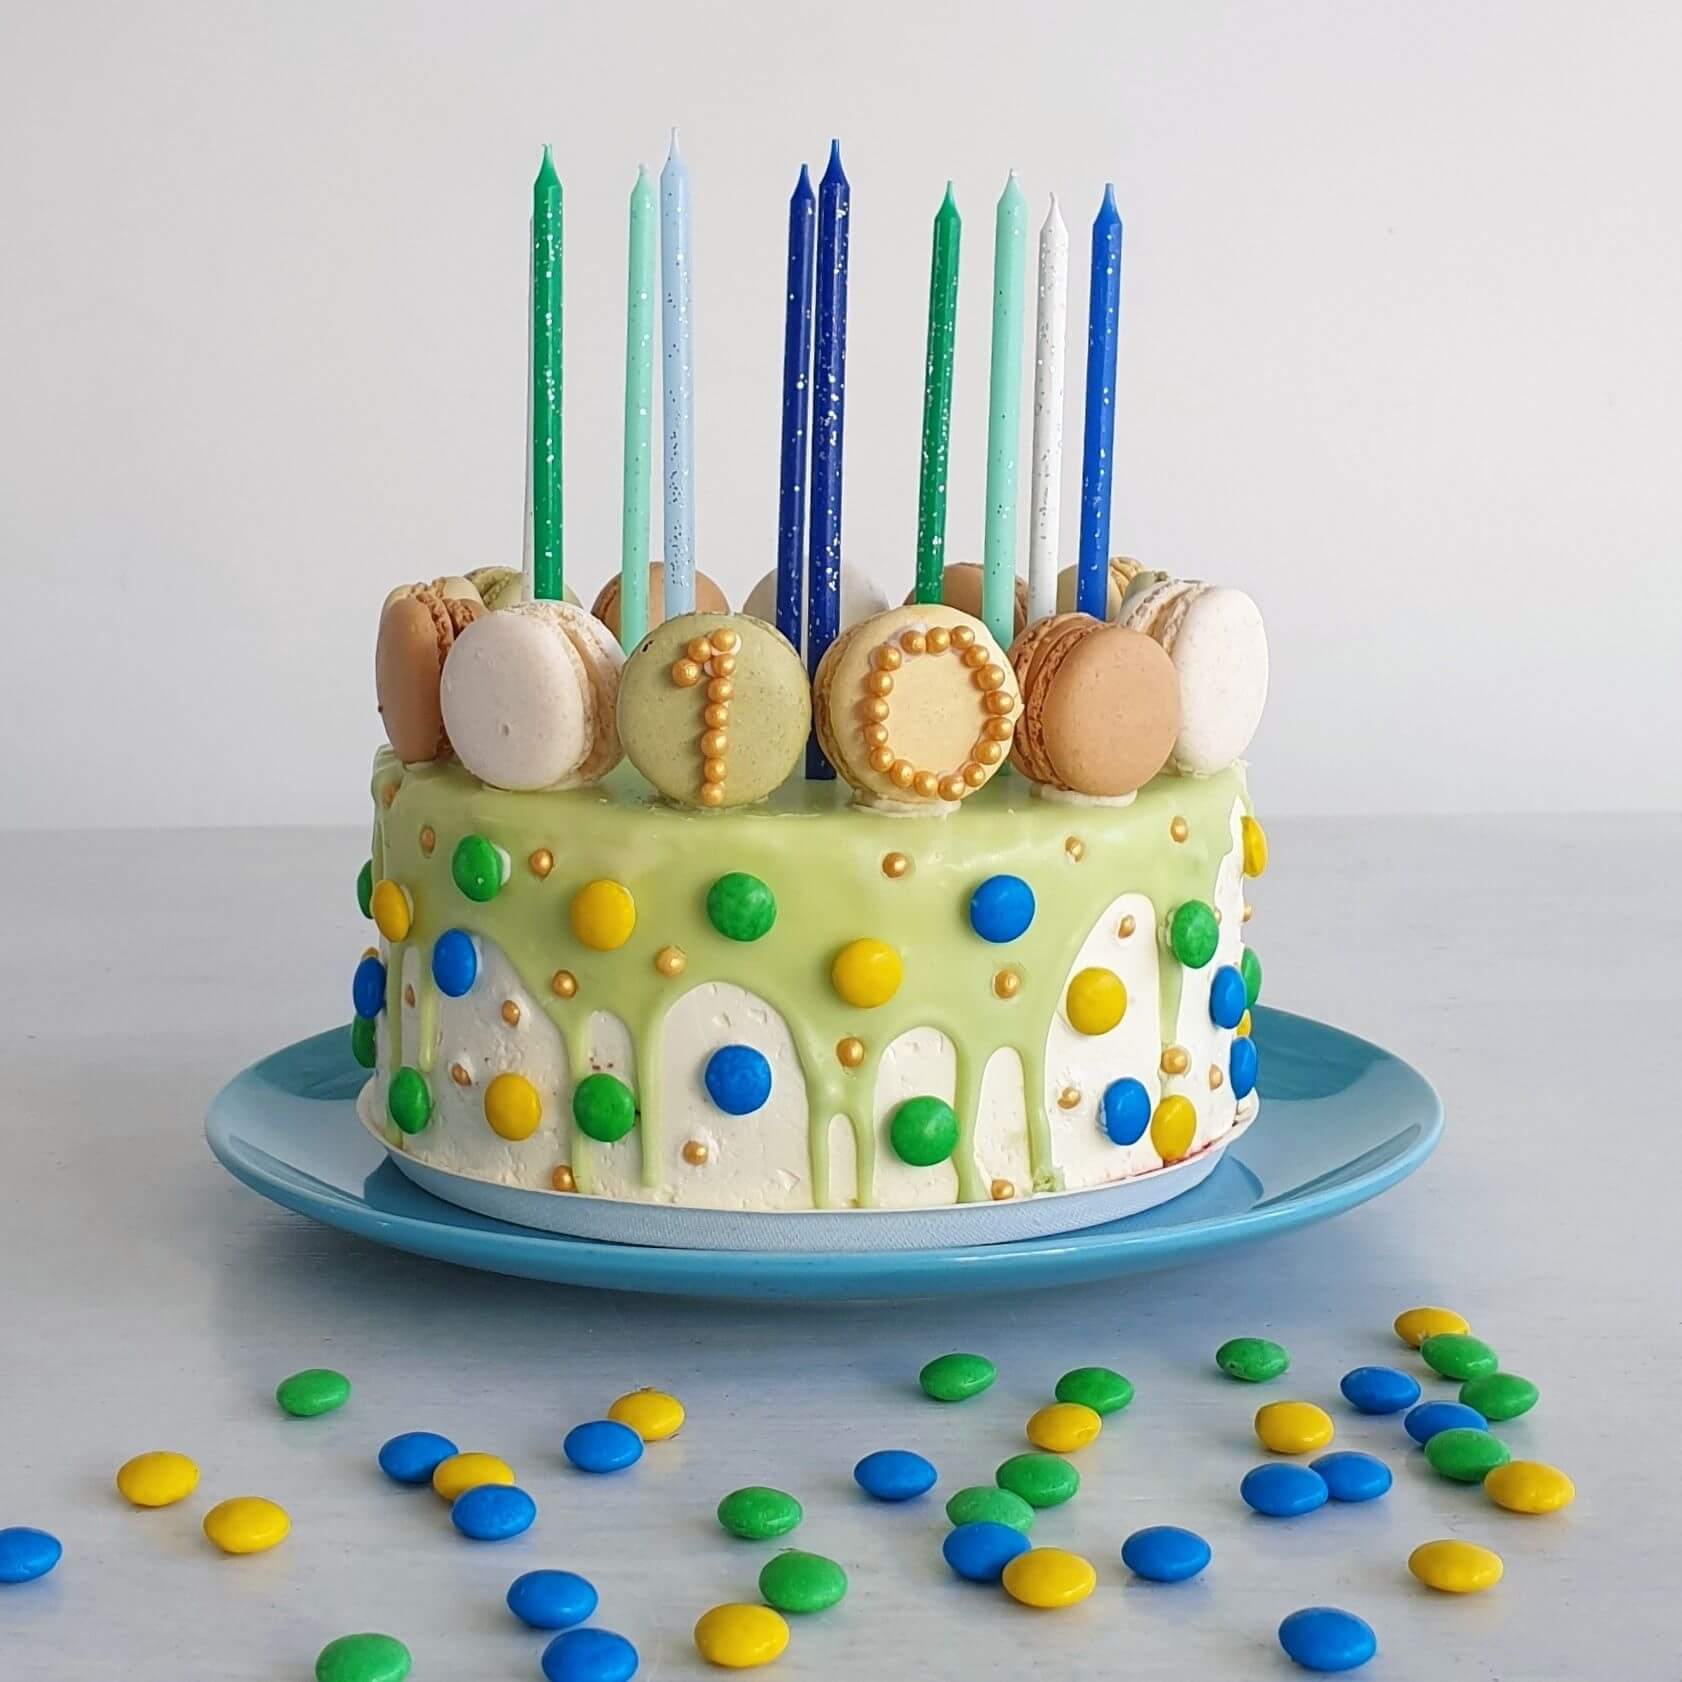 Bakken met kids: 25 leuke recepten voor kinderen. Deze dripcake is heel makkelijk en ziet er super leuk uit.